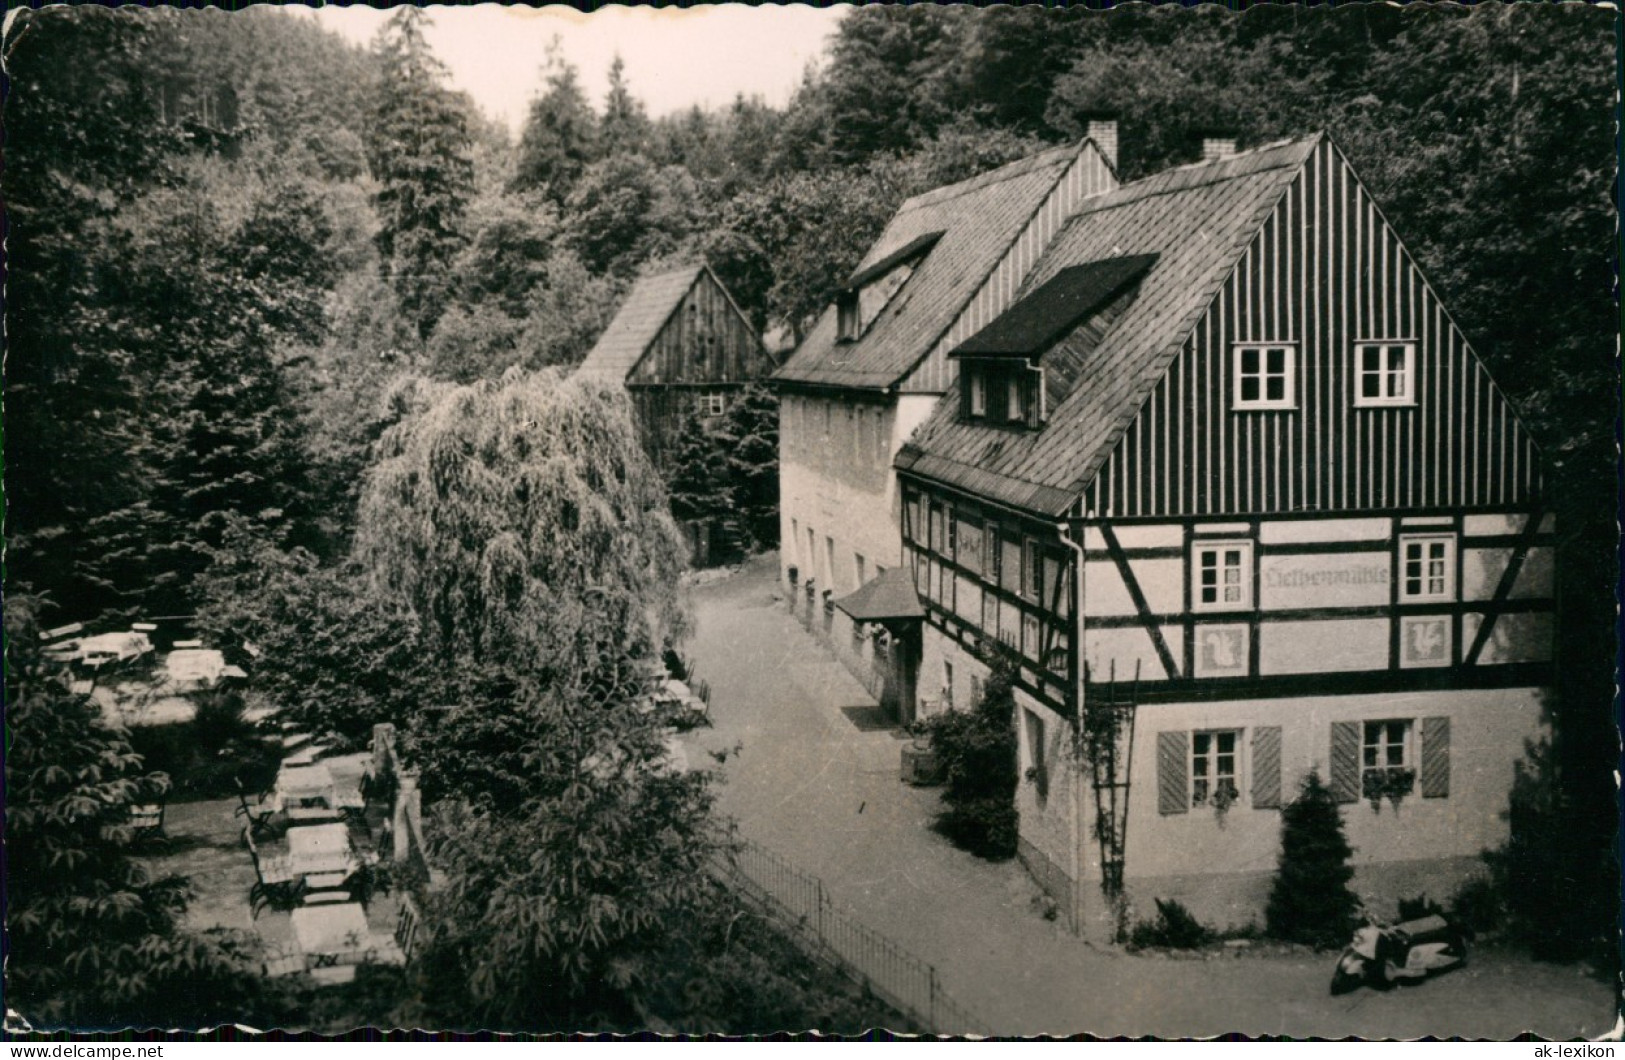 Kleinhennersdorf-Gohrisch (Sächs. Schweiz) Waldidyll Liethenmühle 1965 - Kleinhennersdorf